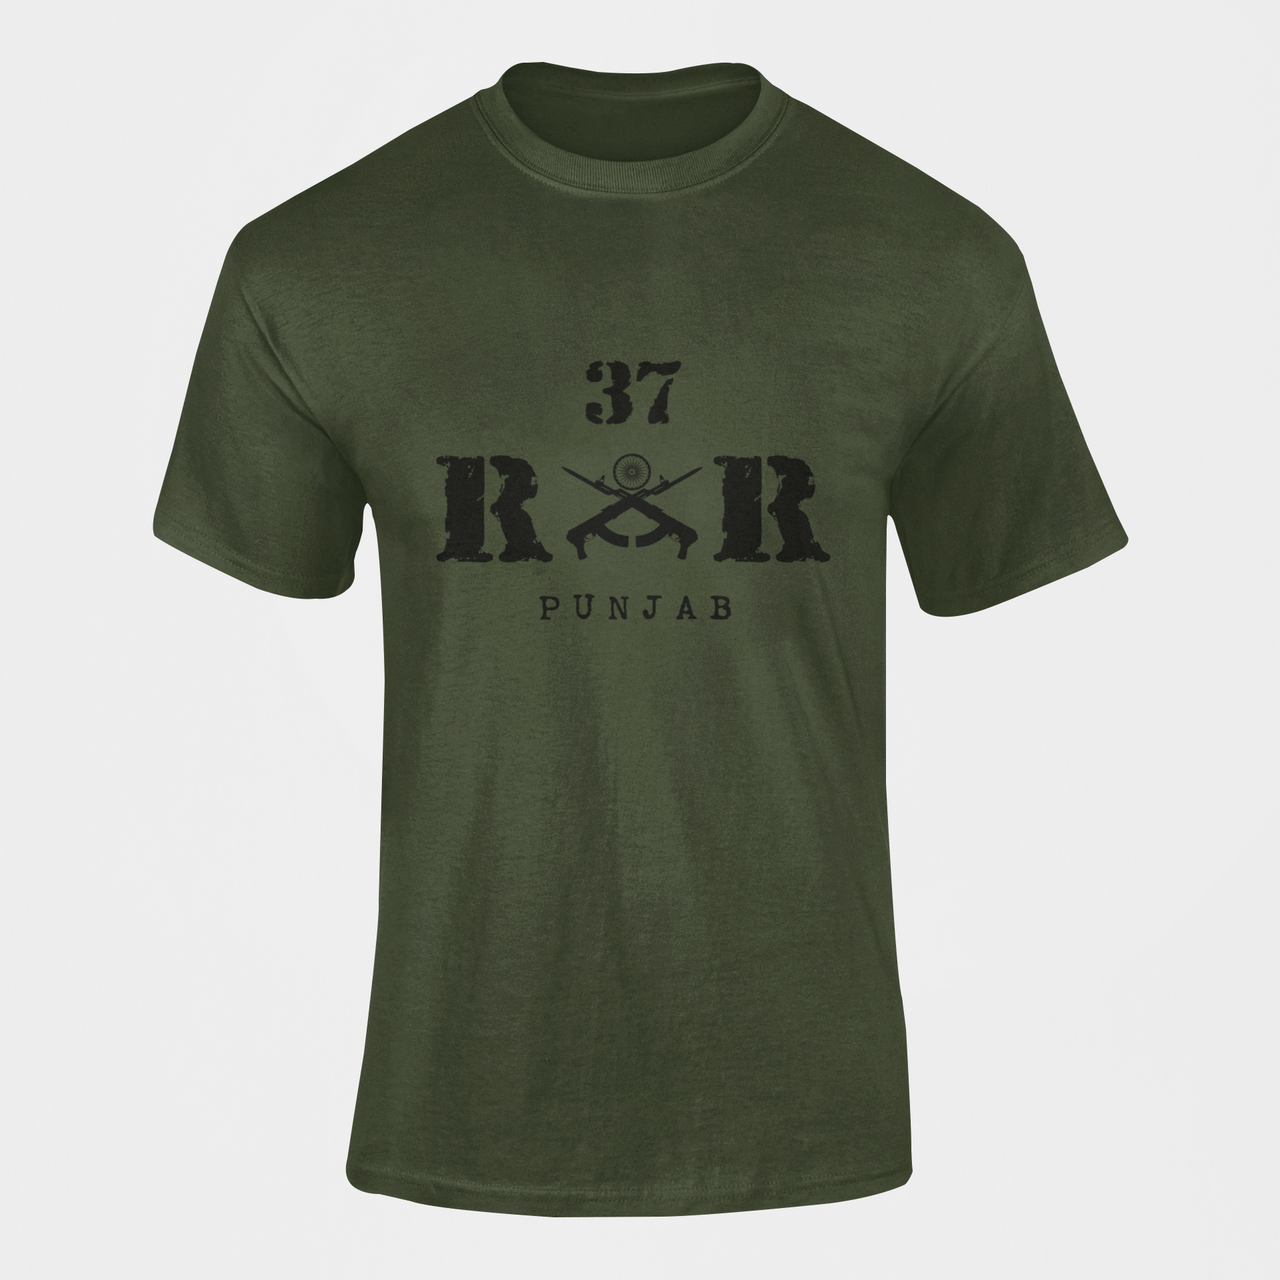 Rashtriya Rifles T-shirt - 37 RR Punjab (Men)